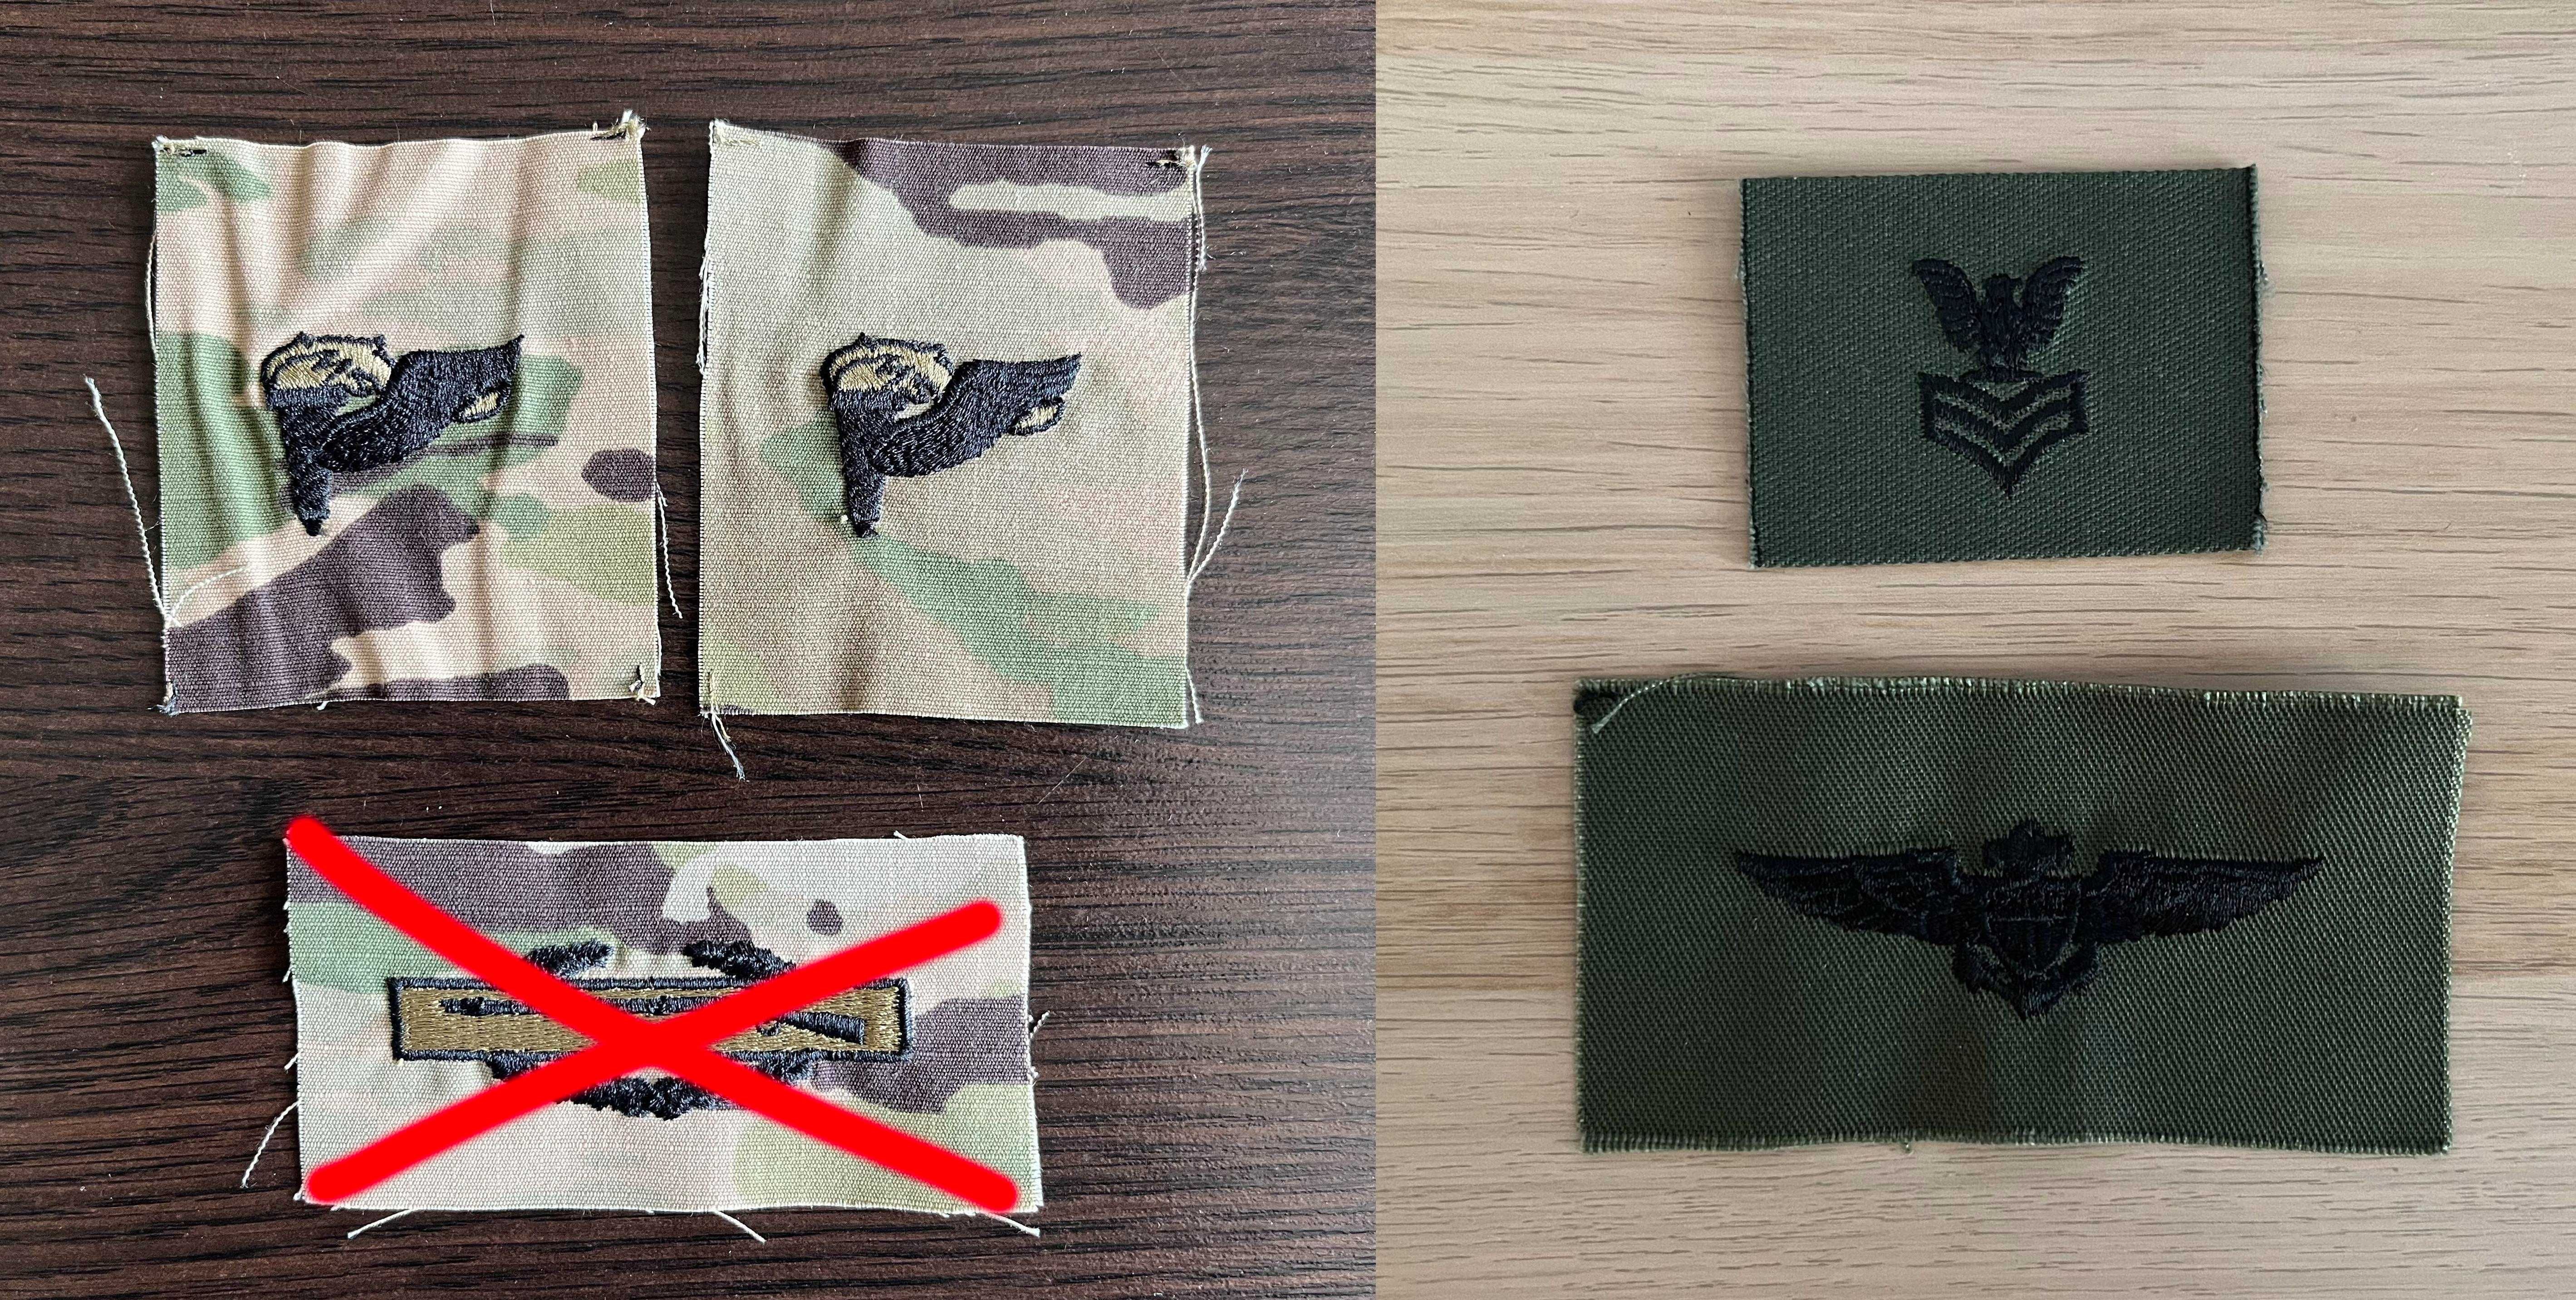 Naszywka USA - US Army, USN, USAF (military, patch) - Badges